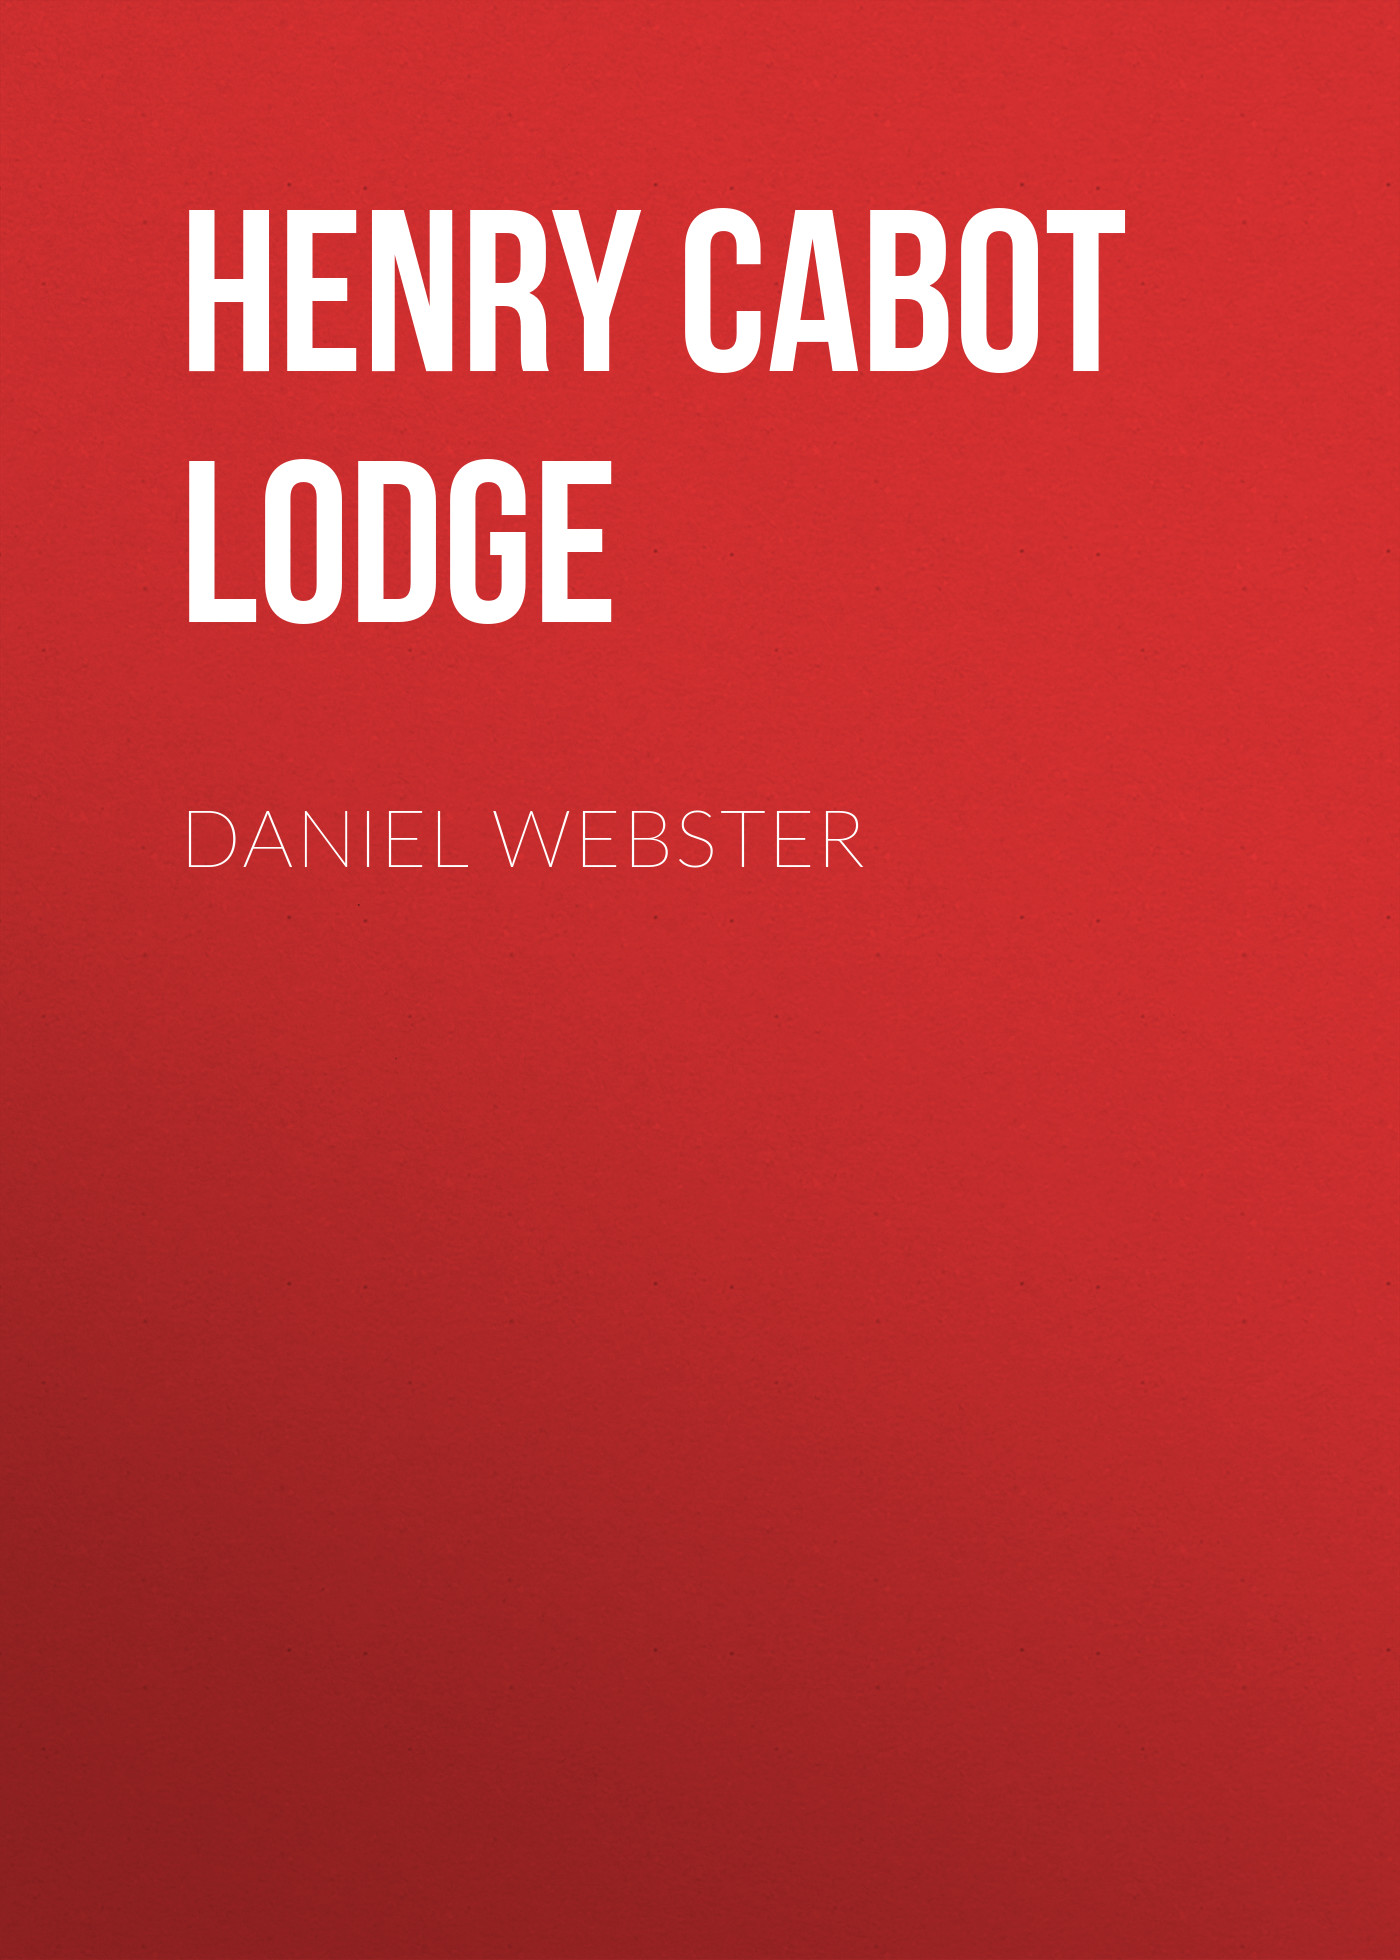 Книга Daniel Webster из серии , созданная Henry Cabot Lodge, может относится к жанру Биографии и Мемуары, История, Зарубежная образовательная литература, Зарубежная старинная литература, Зарубежная классика. Стоимость электронной книги Daniel Webster с идентификатором 36365606 составляет 0 руб.